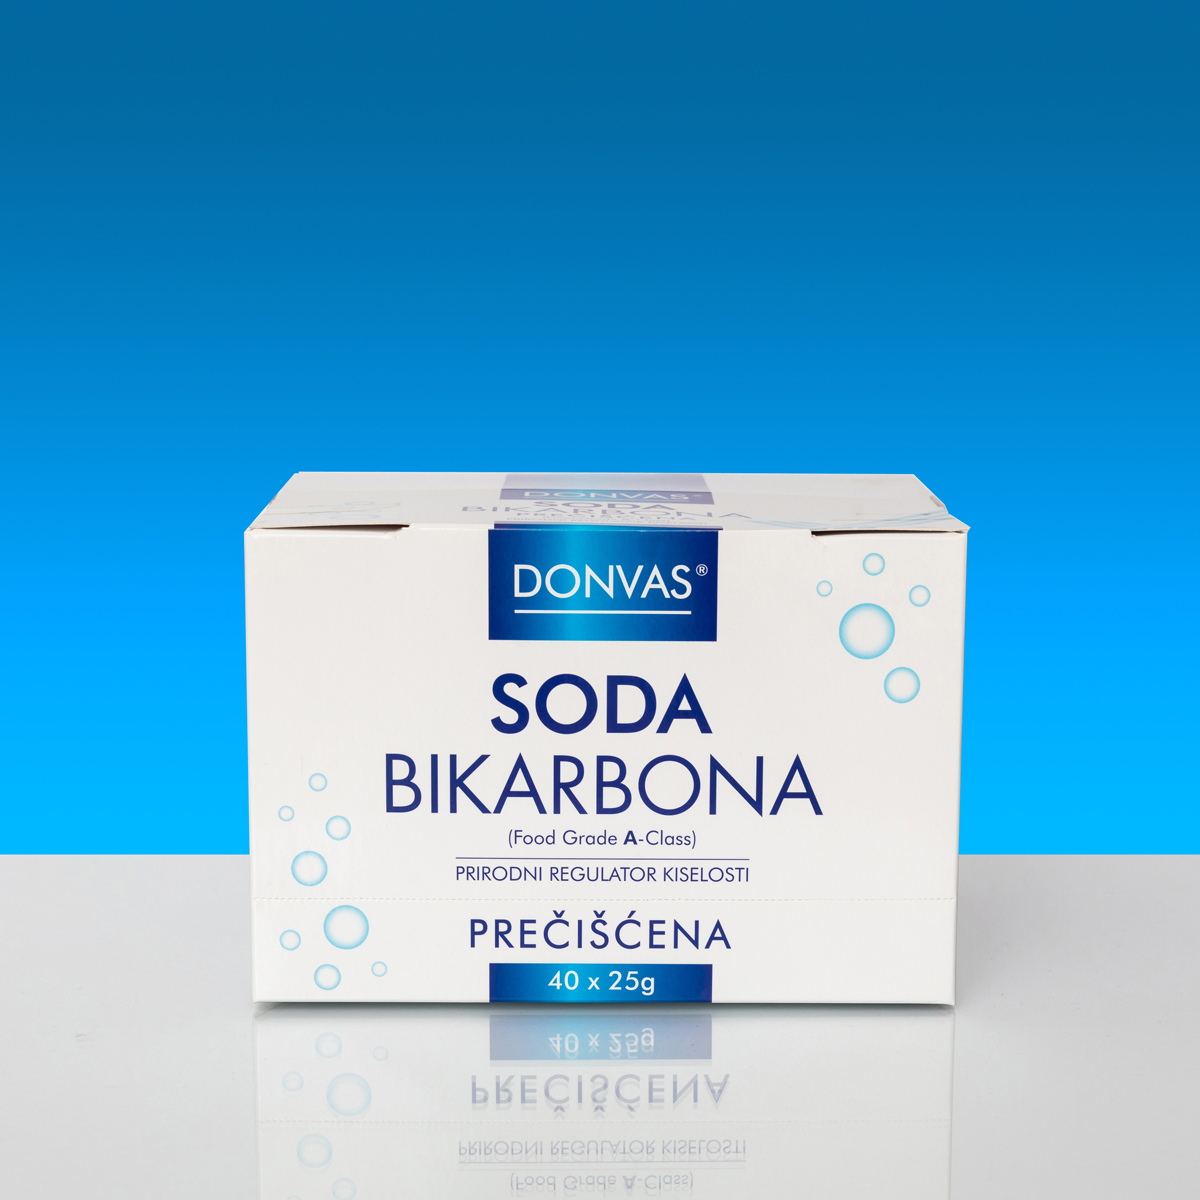 SODA BIKARBONA prečišćena DONVAS®, kesice 40x25g